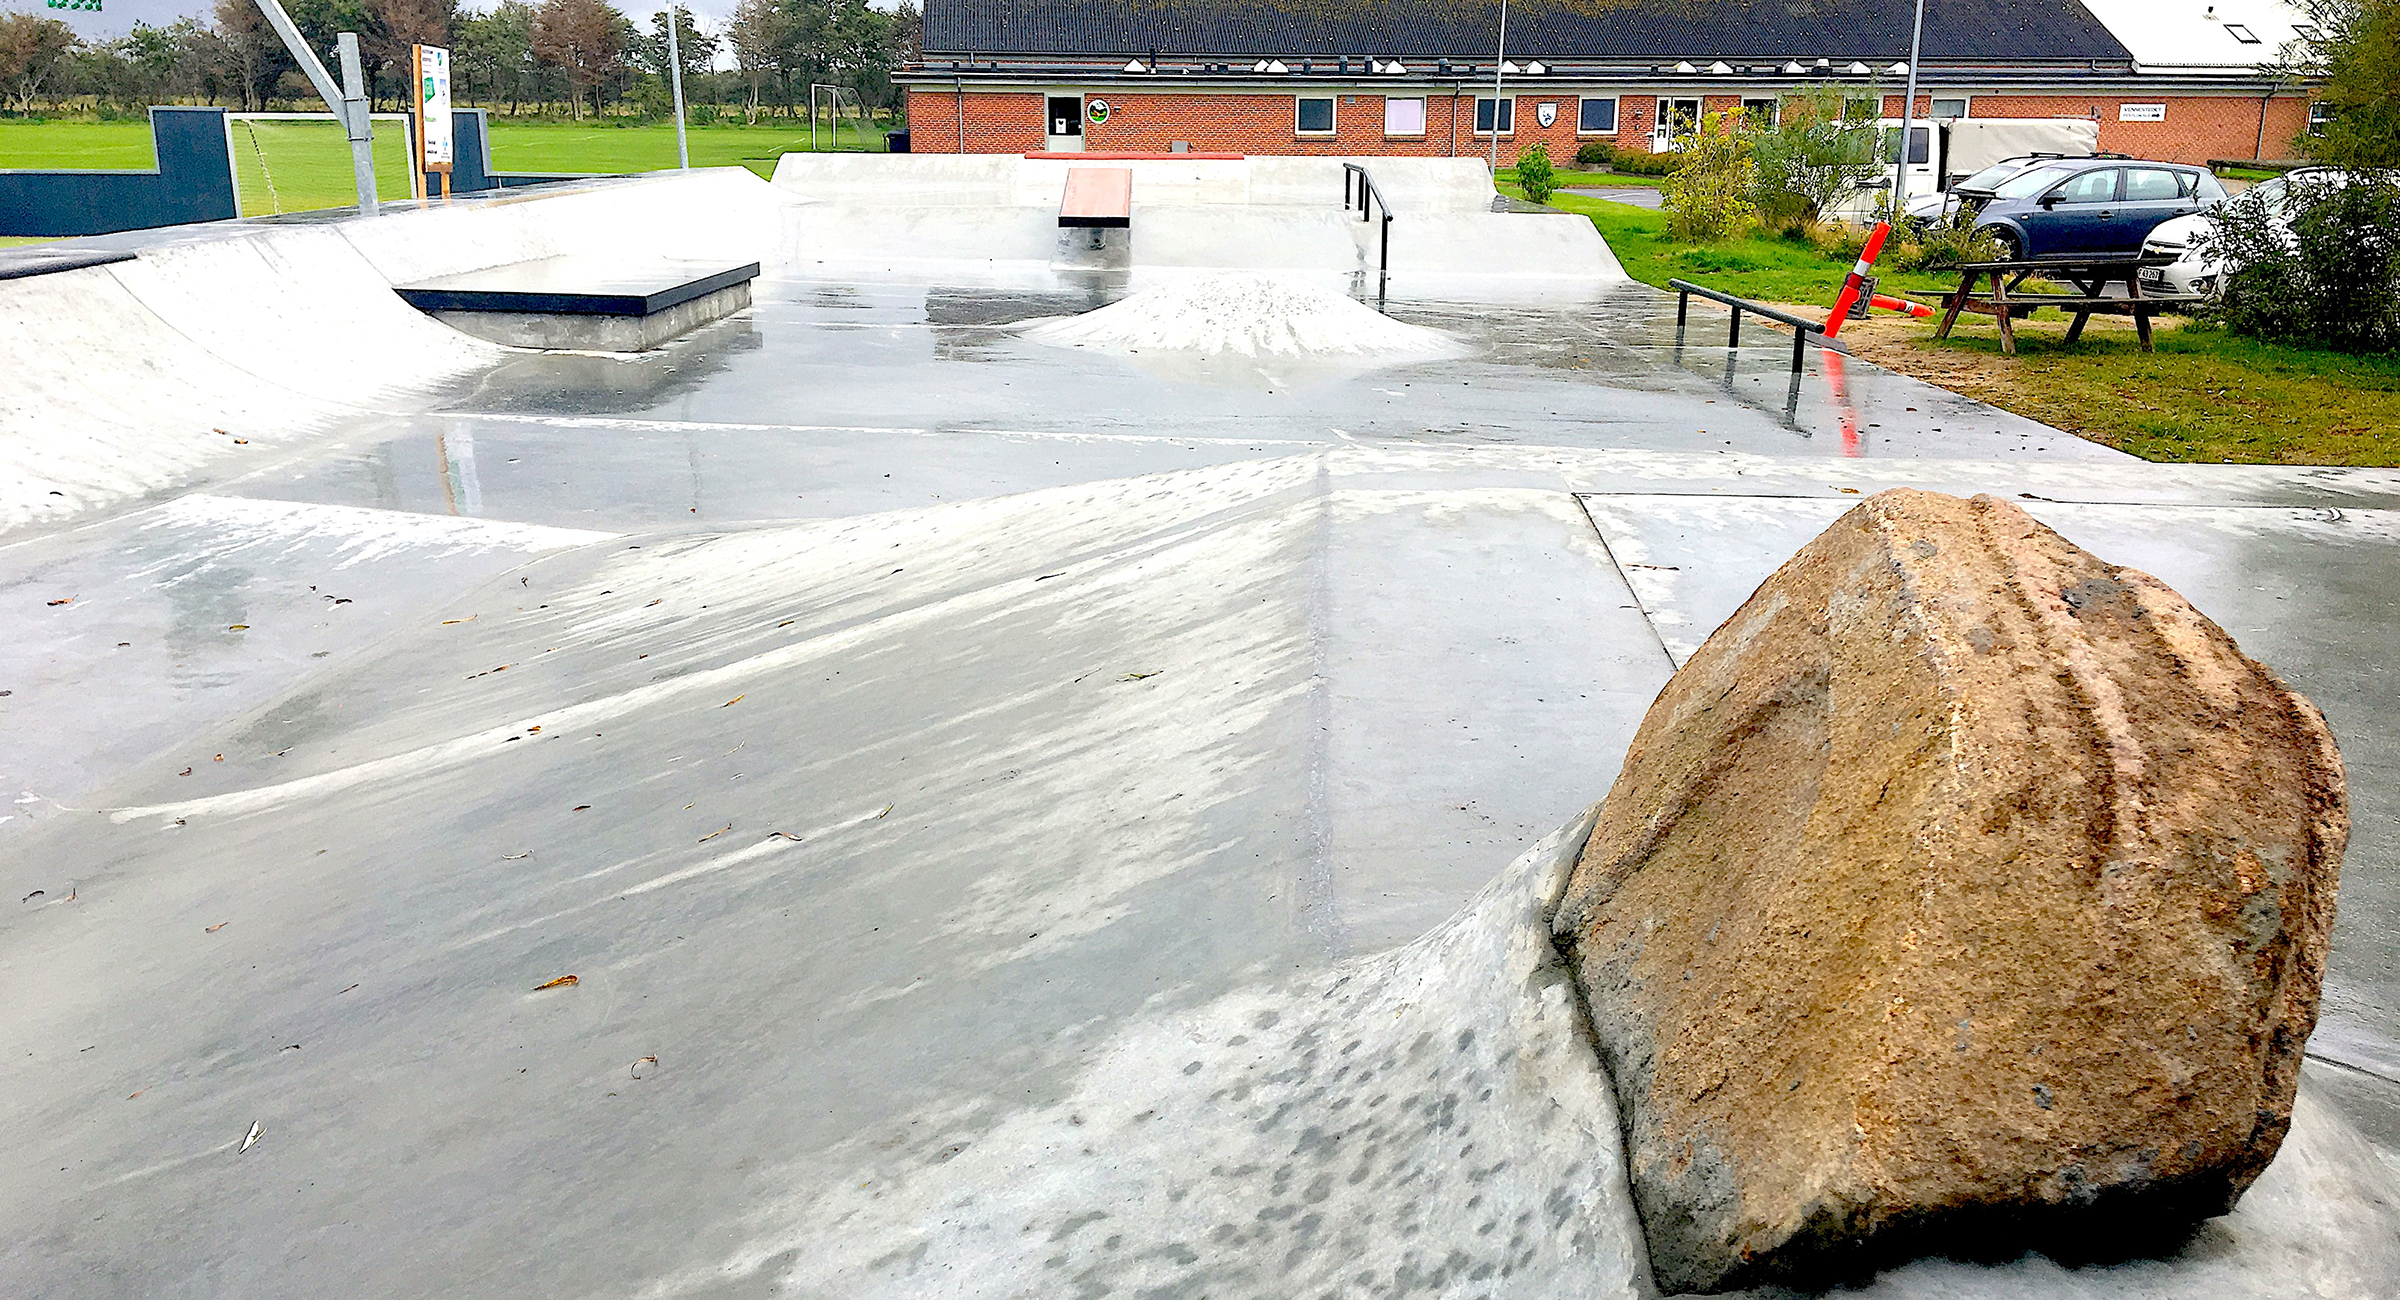 Billedet viser en skatepark i beton med en stor natursten i forgrunden